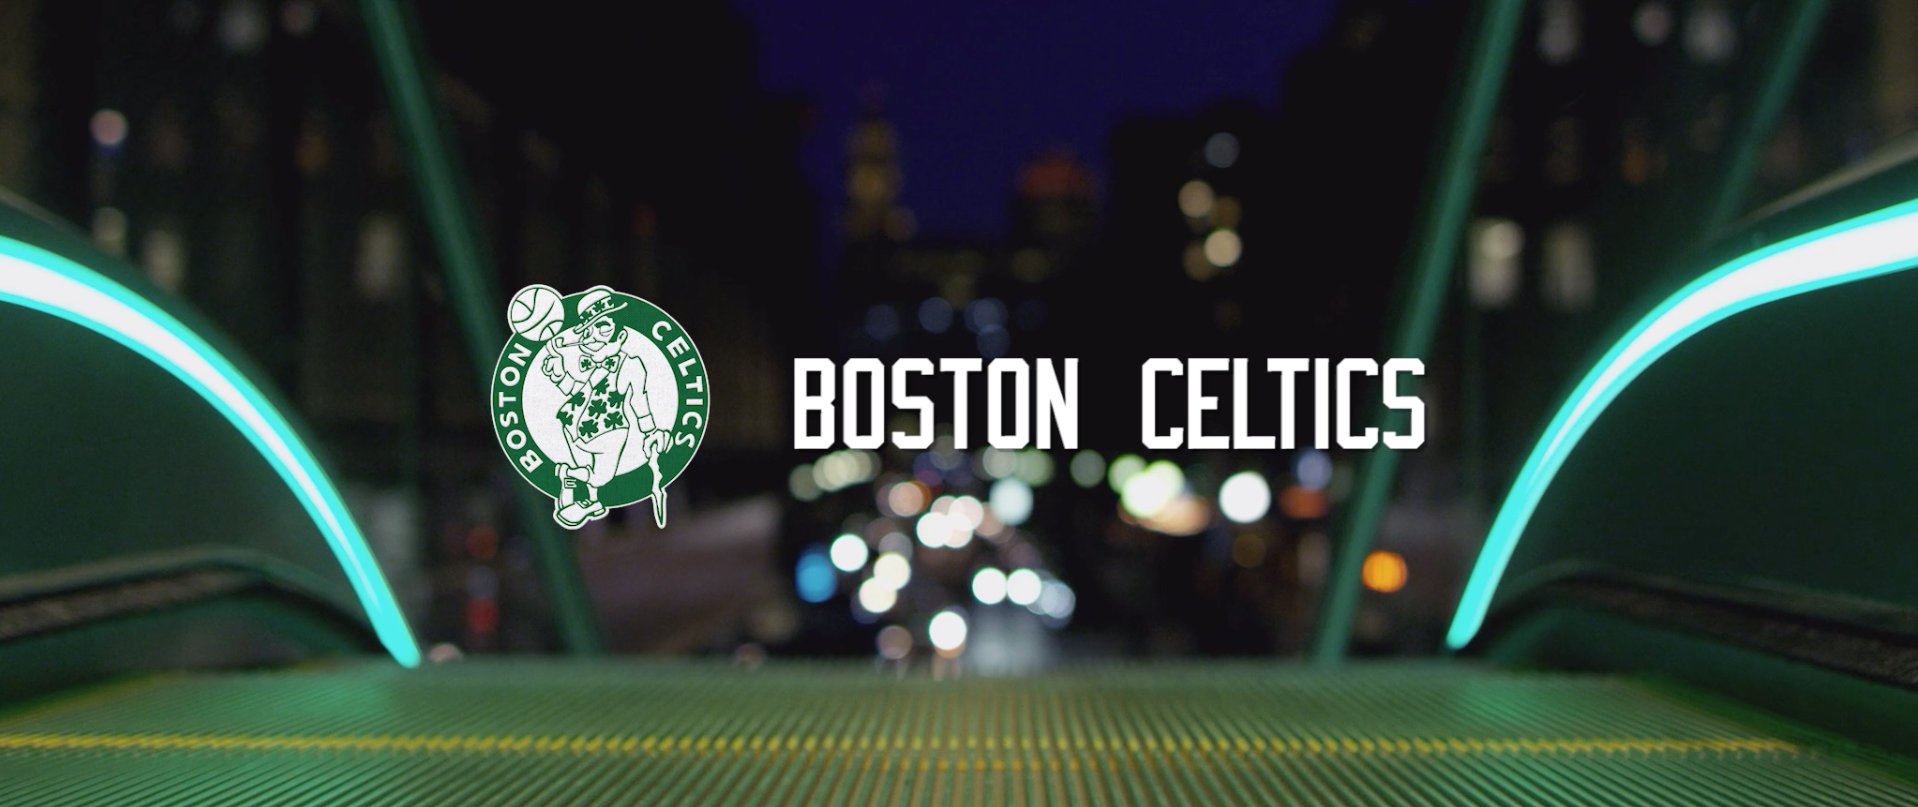 NYX Video Awards Sports Boston Celtics Xfinity Video o...